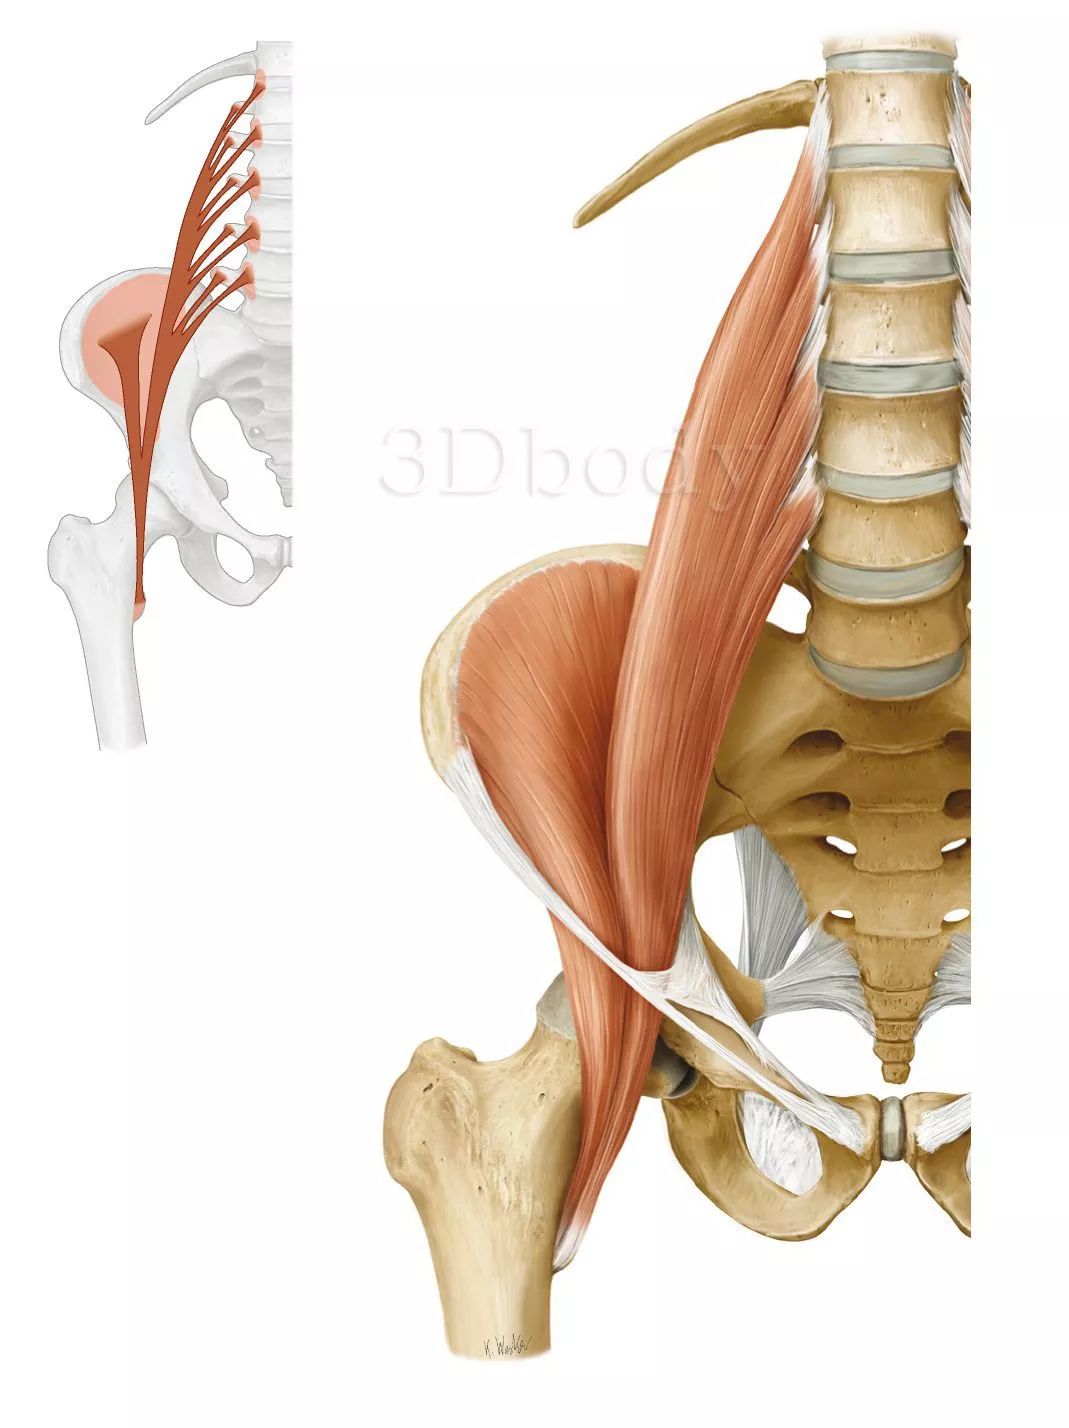 这就要从腰大肌的解剖讲起了,腰大肌上连第十二胸椎和全部腰椎体及